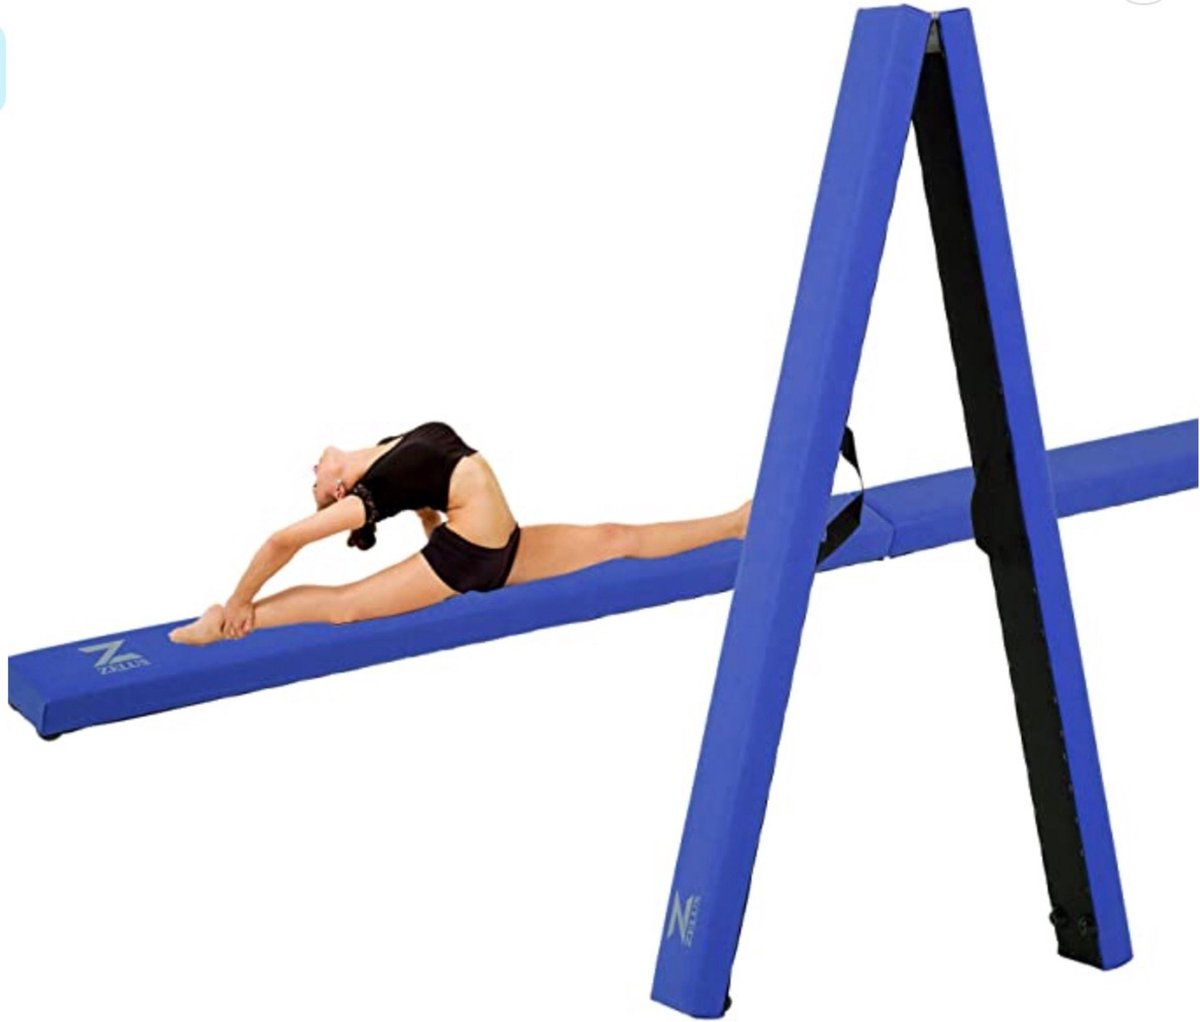 Barre de gymnastique pliable bleue + vidéos d'exercices - Barre